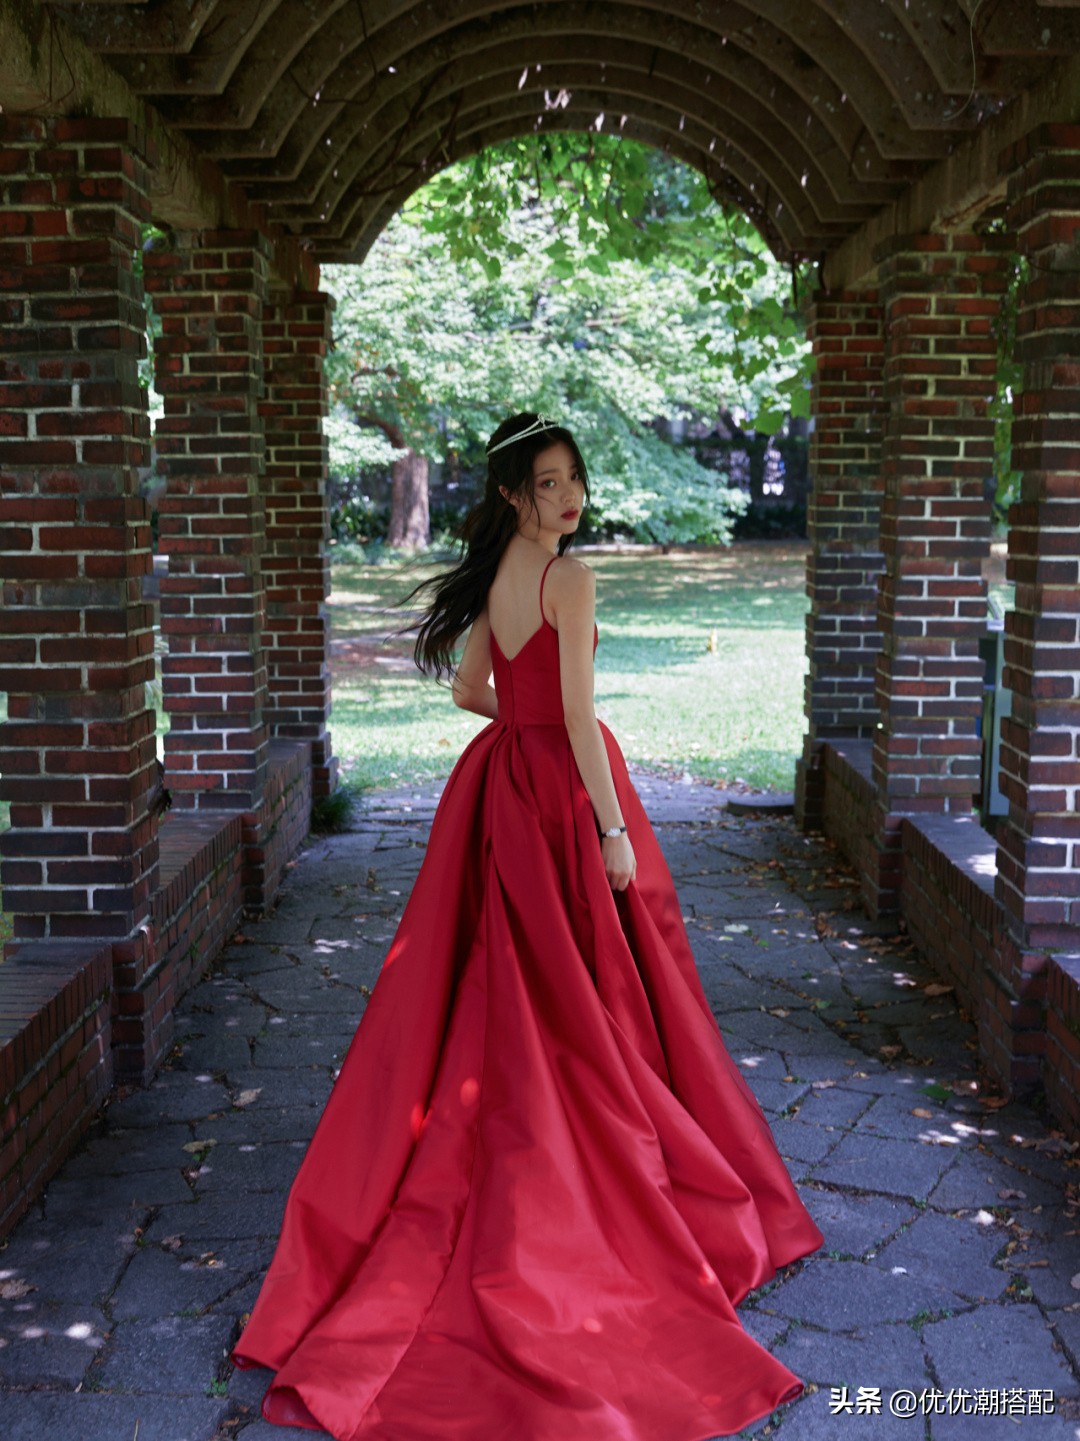 欧阳娜娜女人味真足！穿红色礼服裙好养眼，丰满的身材吸睛又性感